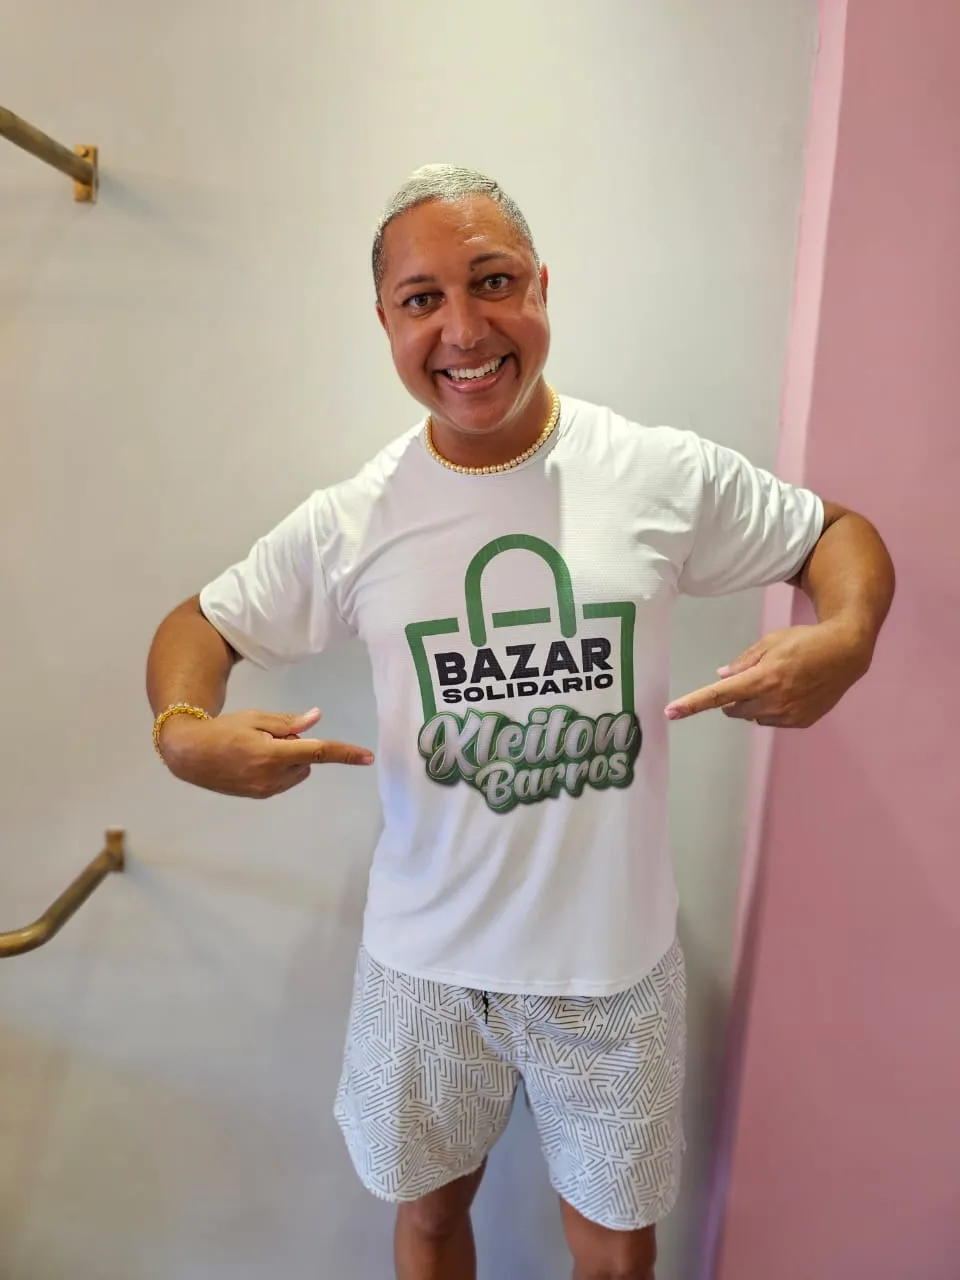 
		Influencer Kleiton Barros realizará bazar solidário no Farol da Barra